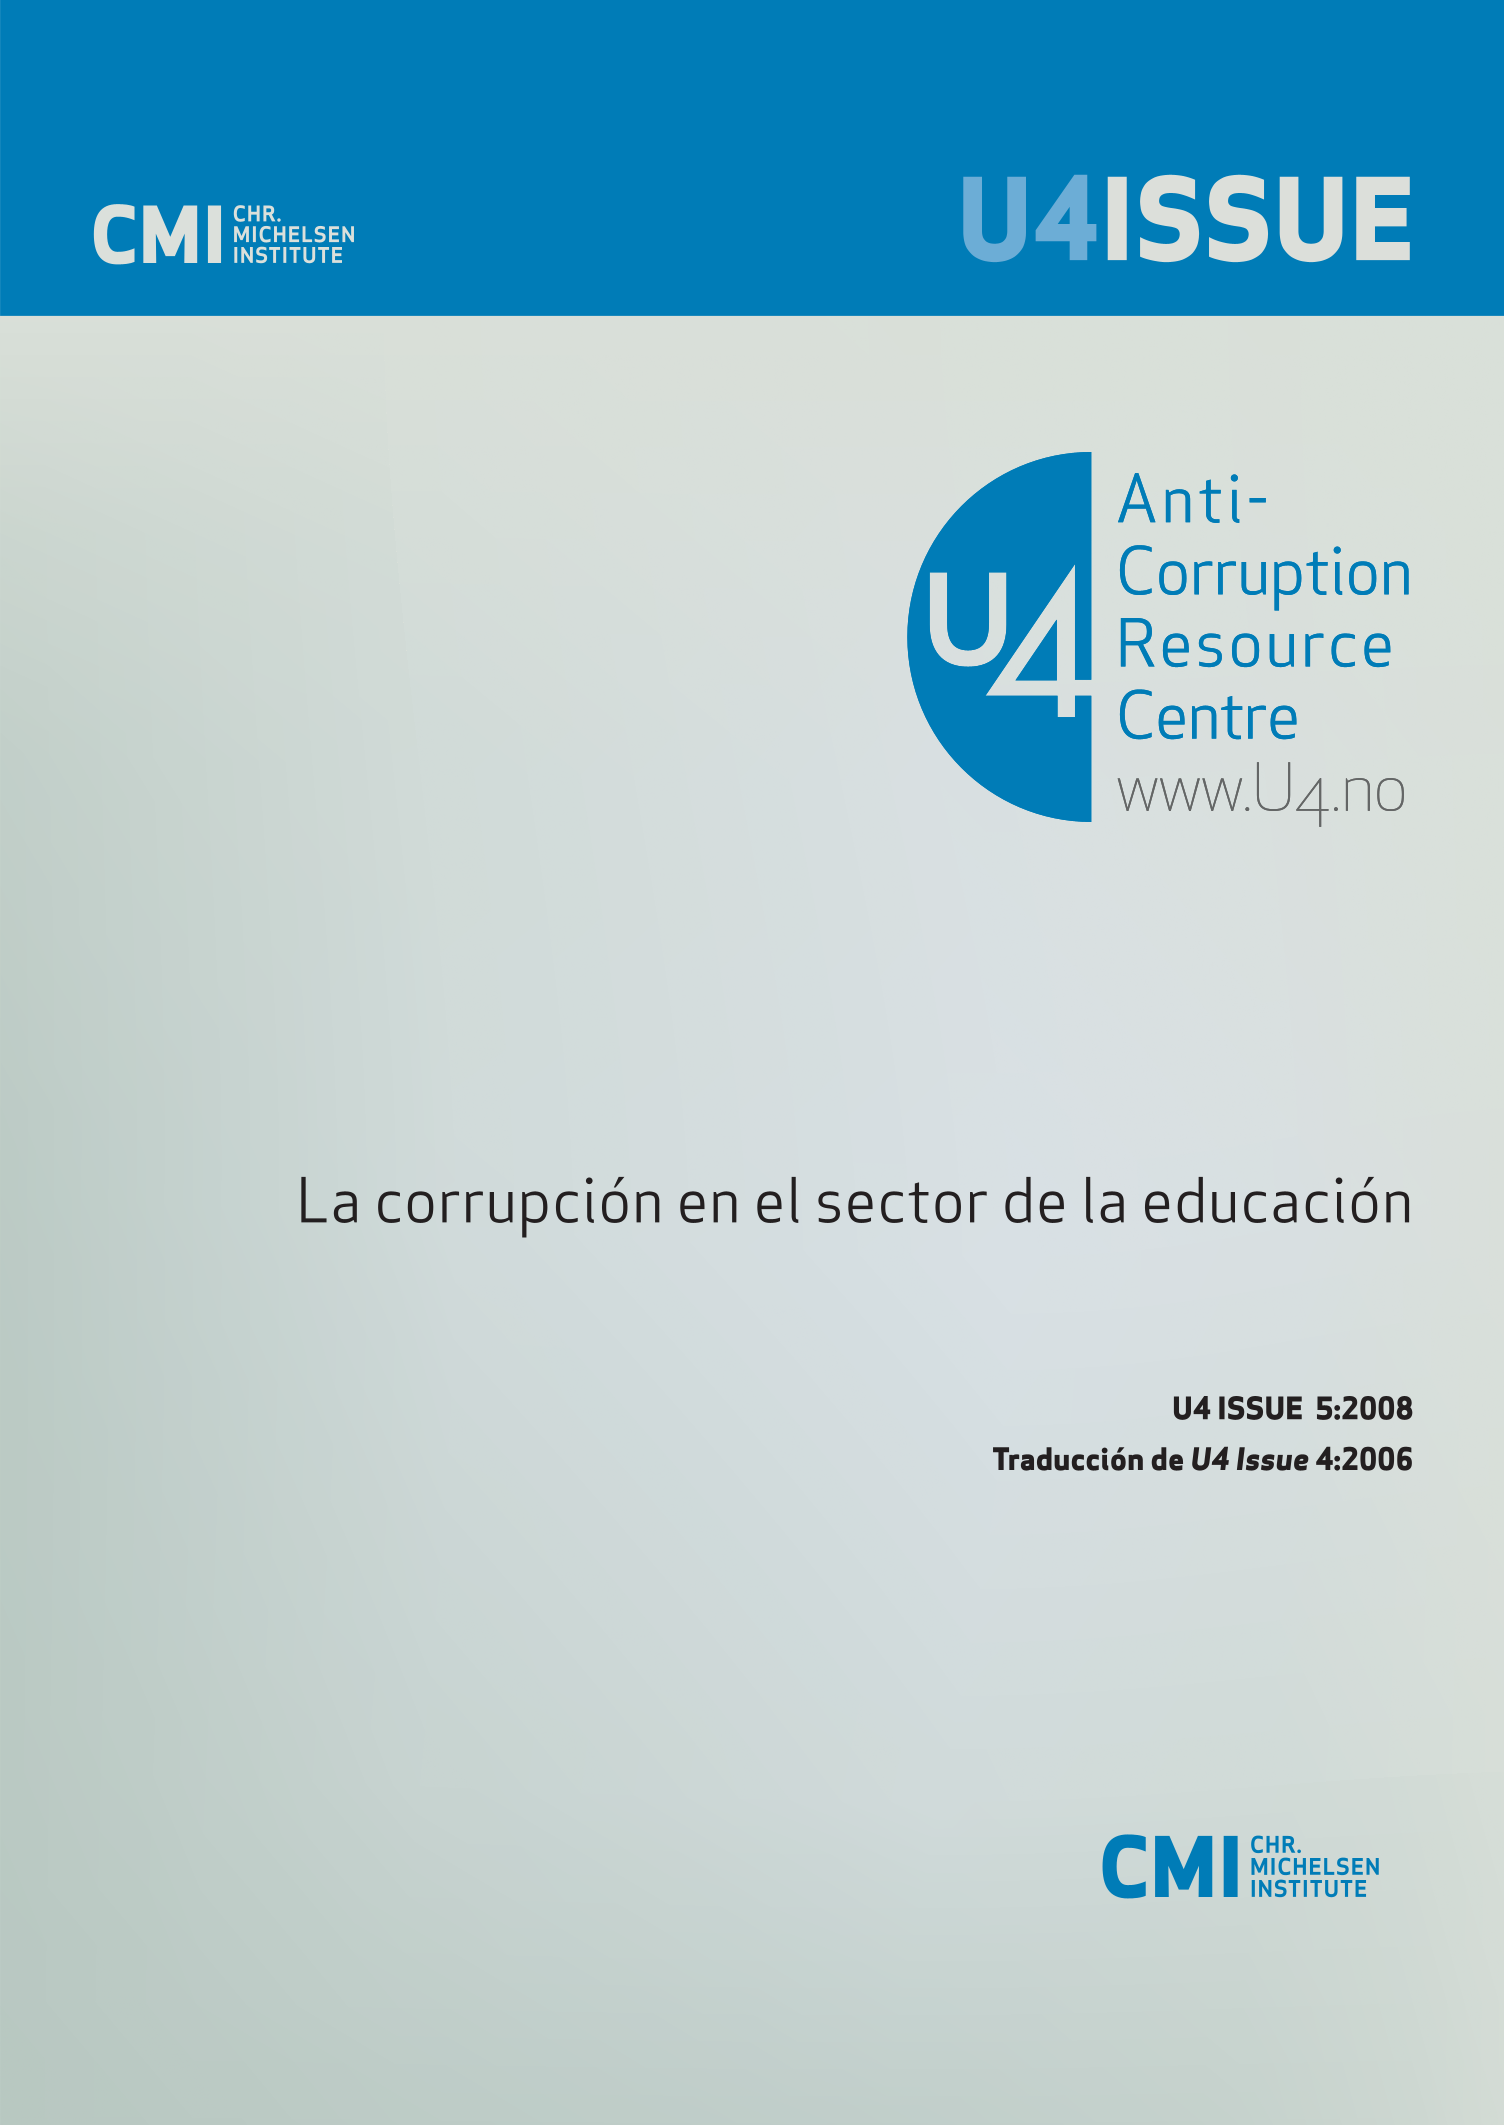 La corrupción en el sector de la educación